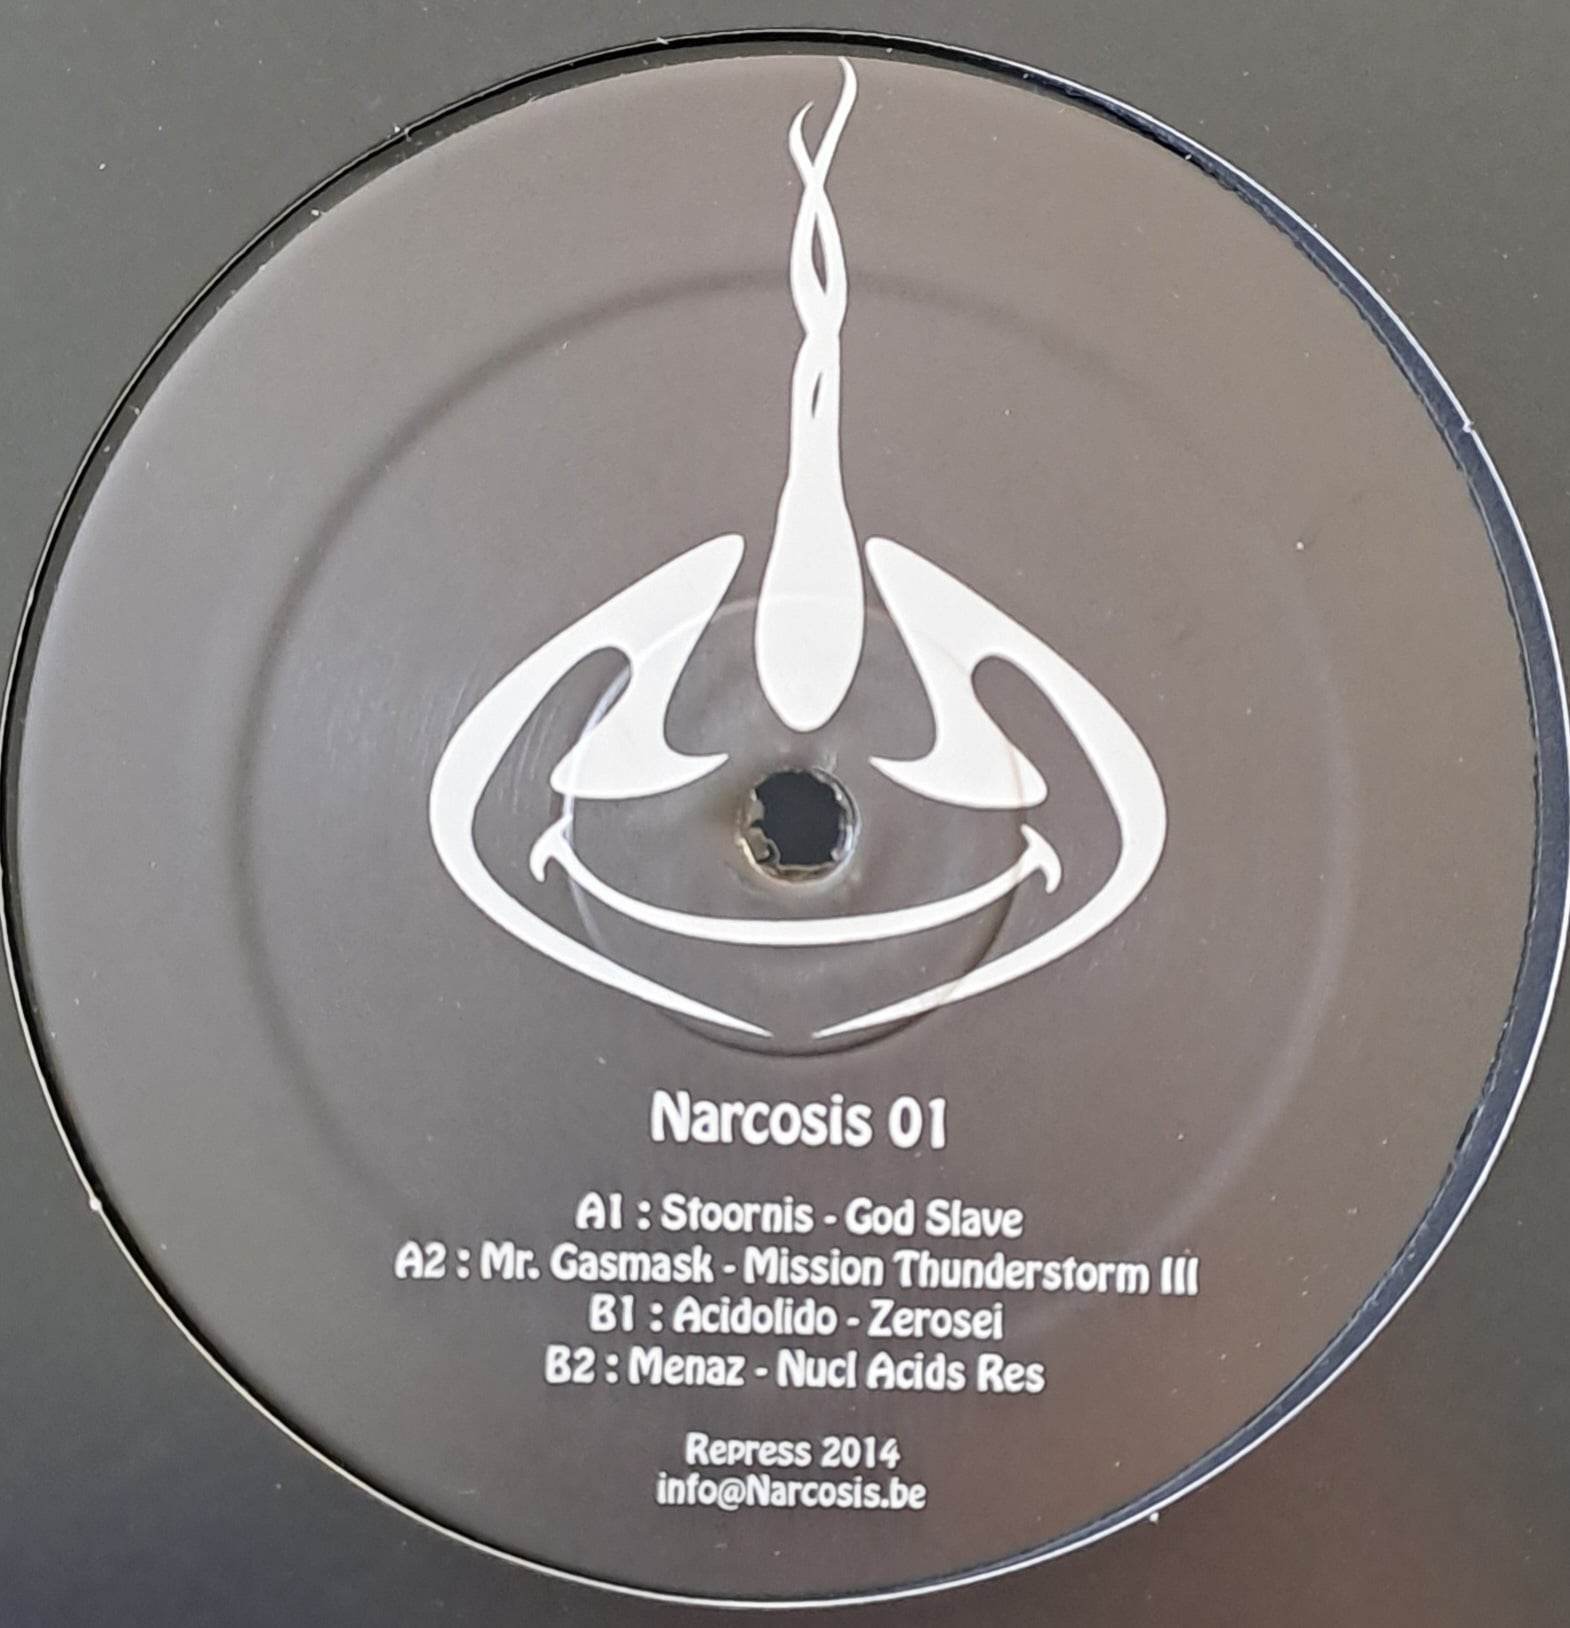 Narcosis 01 RP (toute dernière copie en stock) - vinyle acidcore